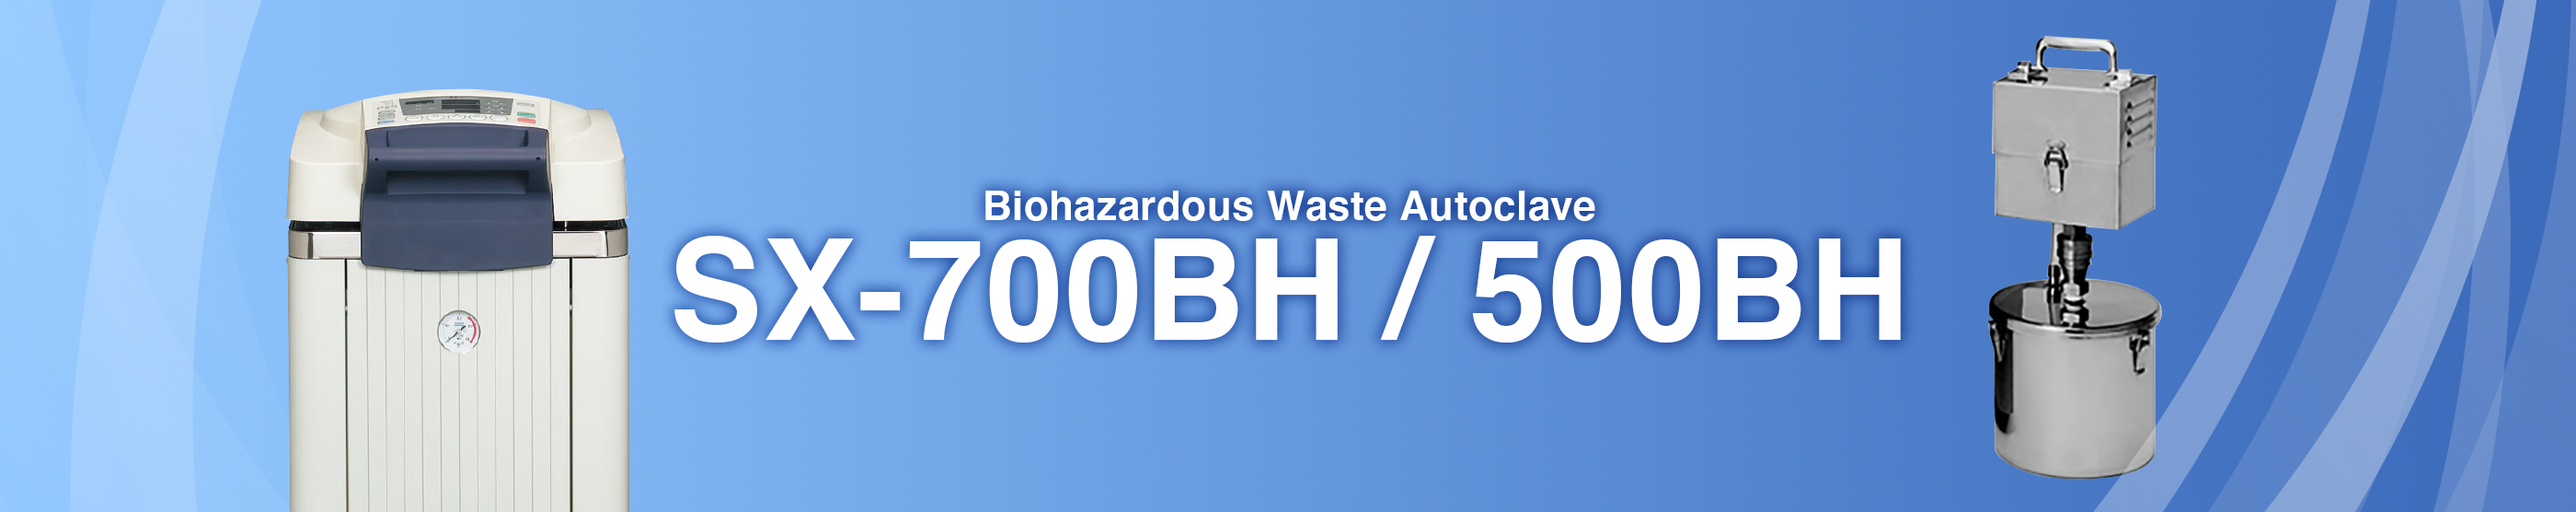 Biohazardous Waste Autoclave SX-700BH / 500BH